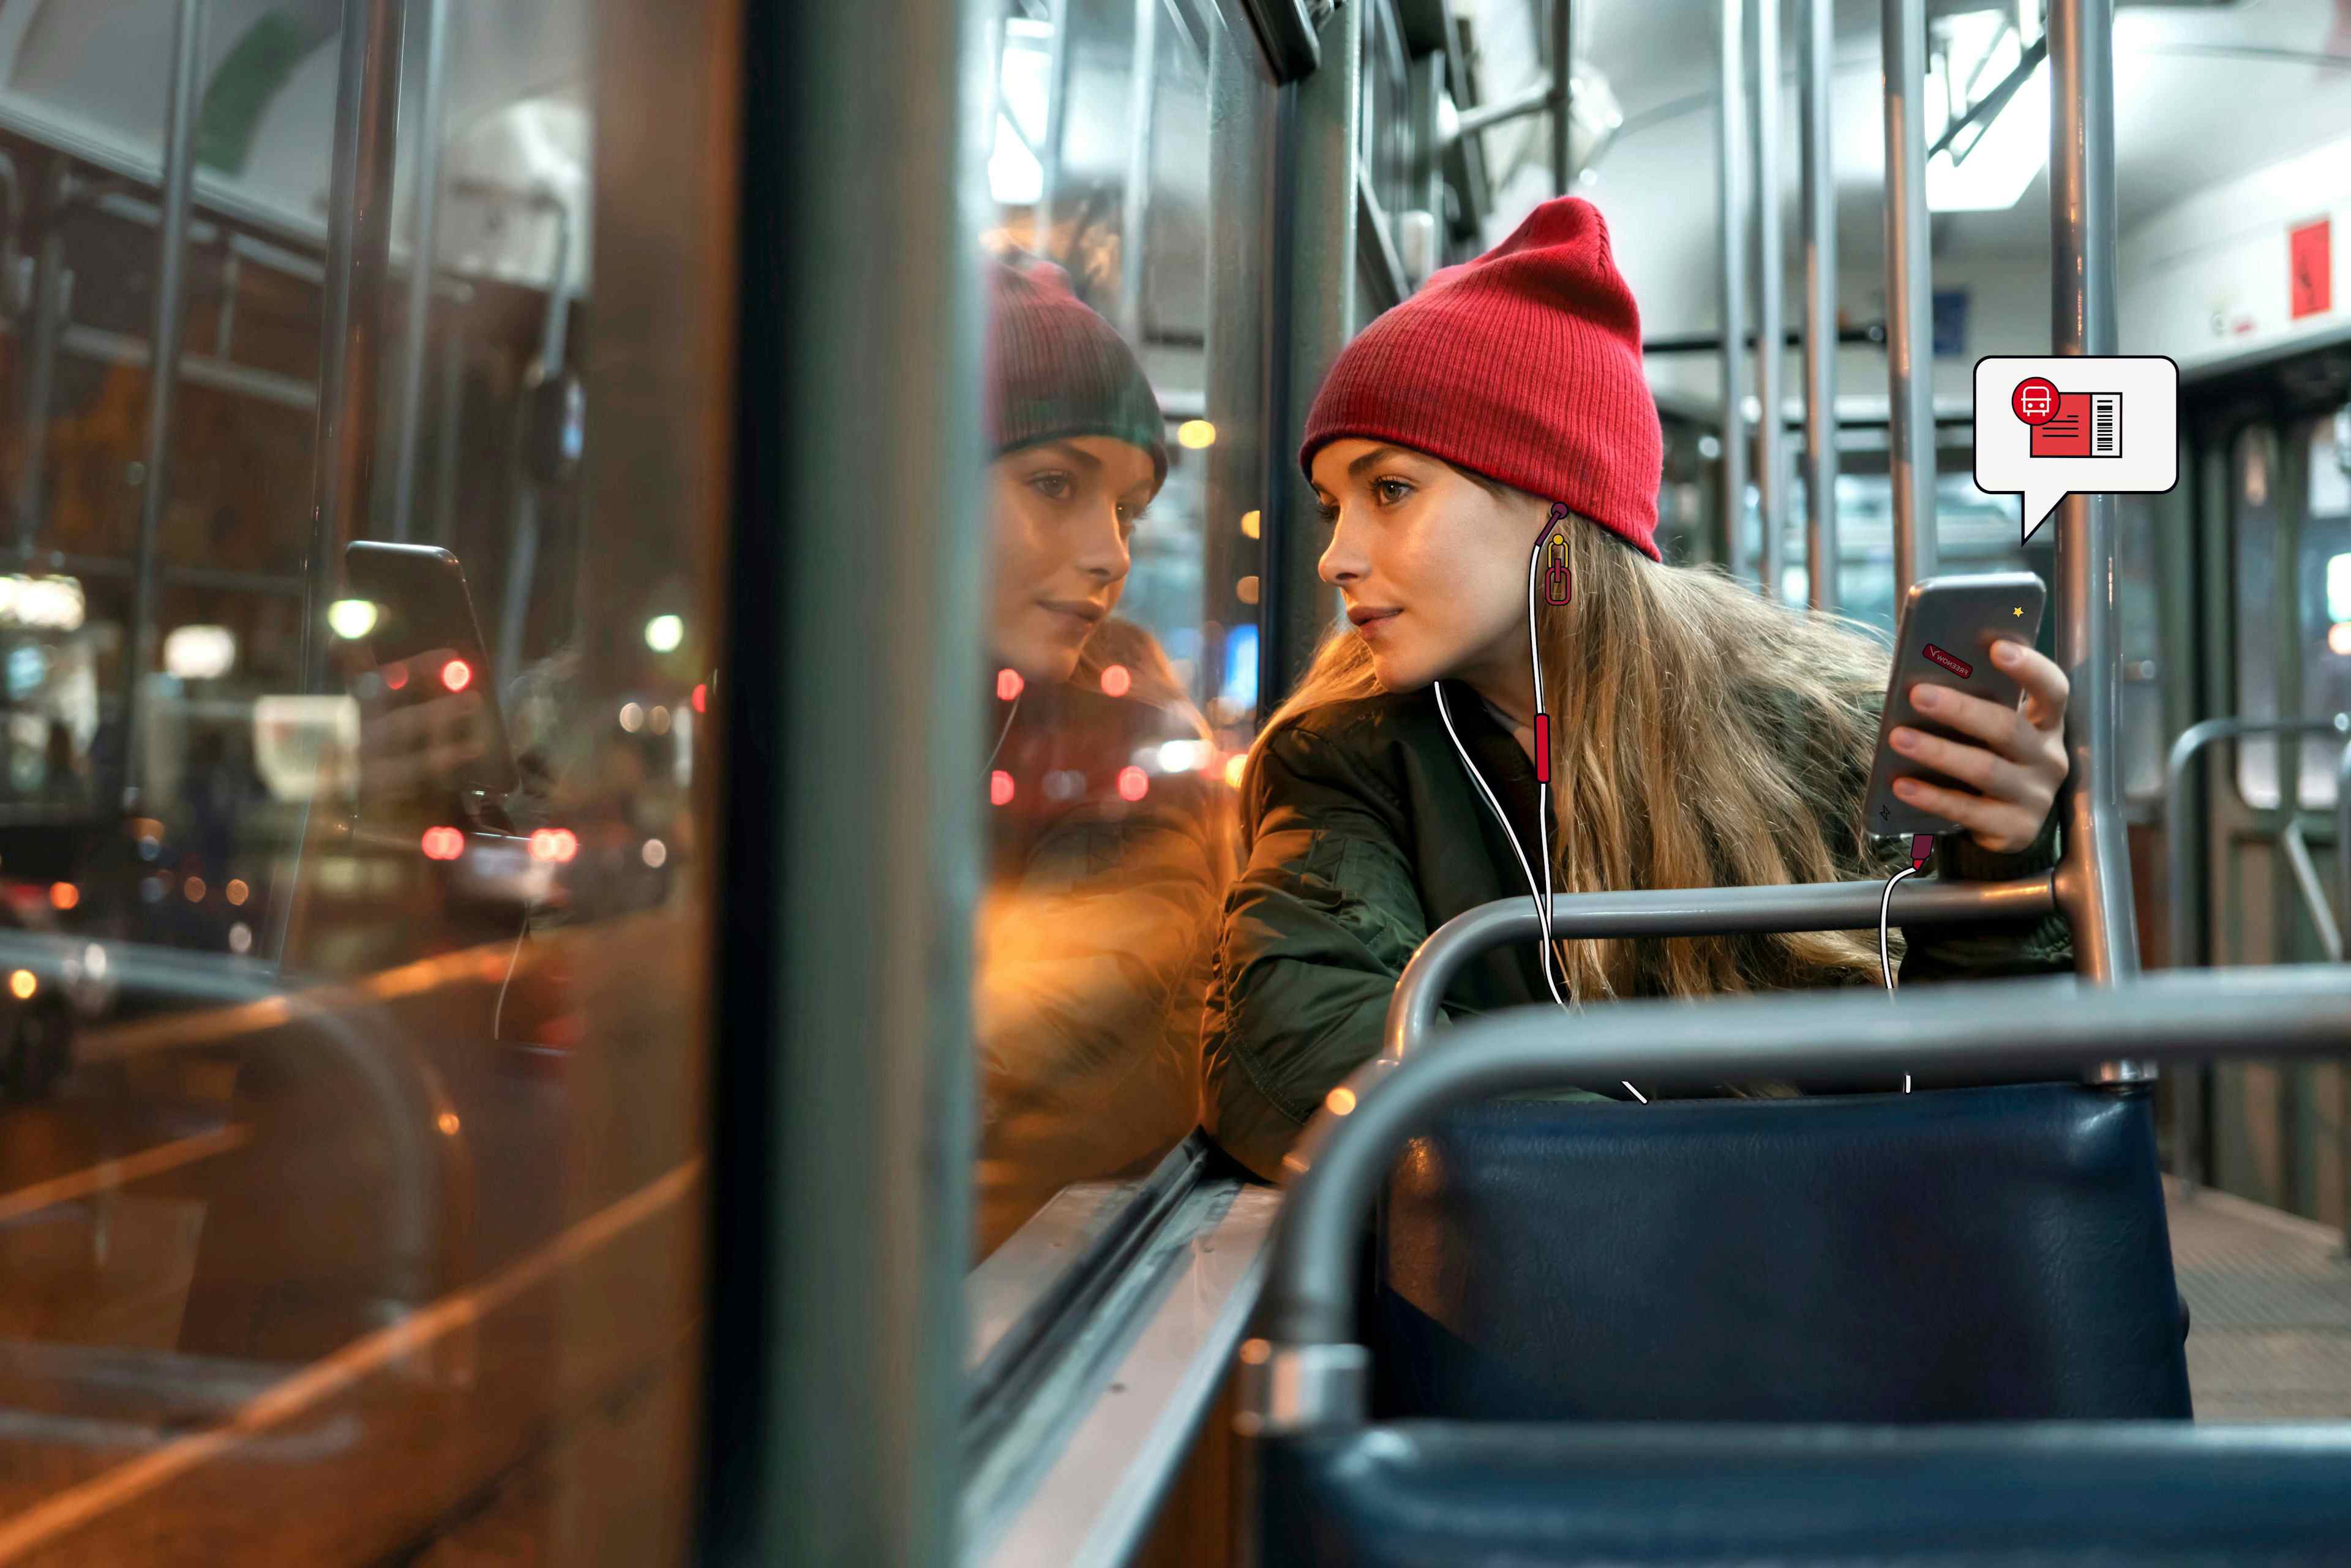 Impiegata in autobus che tiene in mano il suo telefono con l'icona di un biglietto del trasporto pubblico che spunta fuori dal cellulare